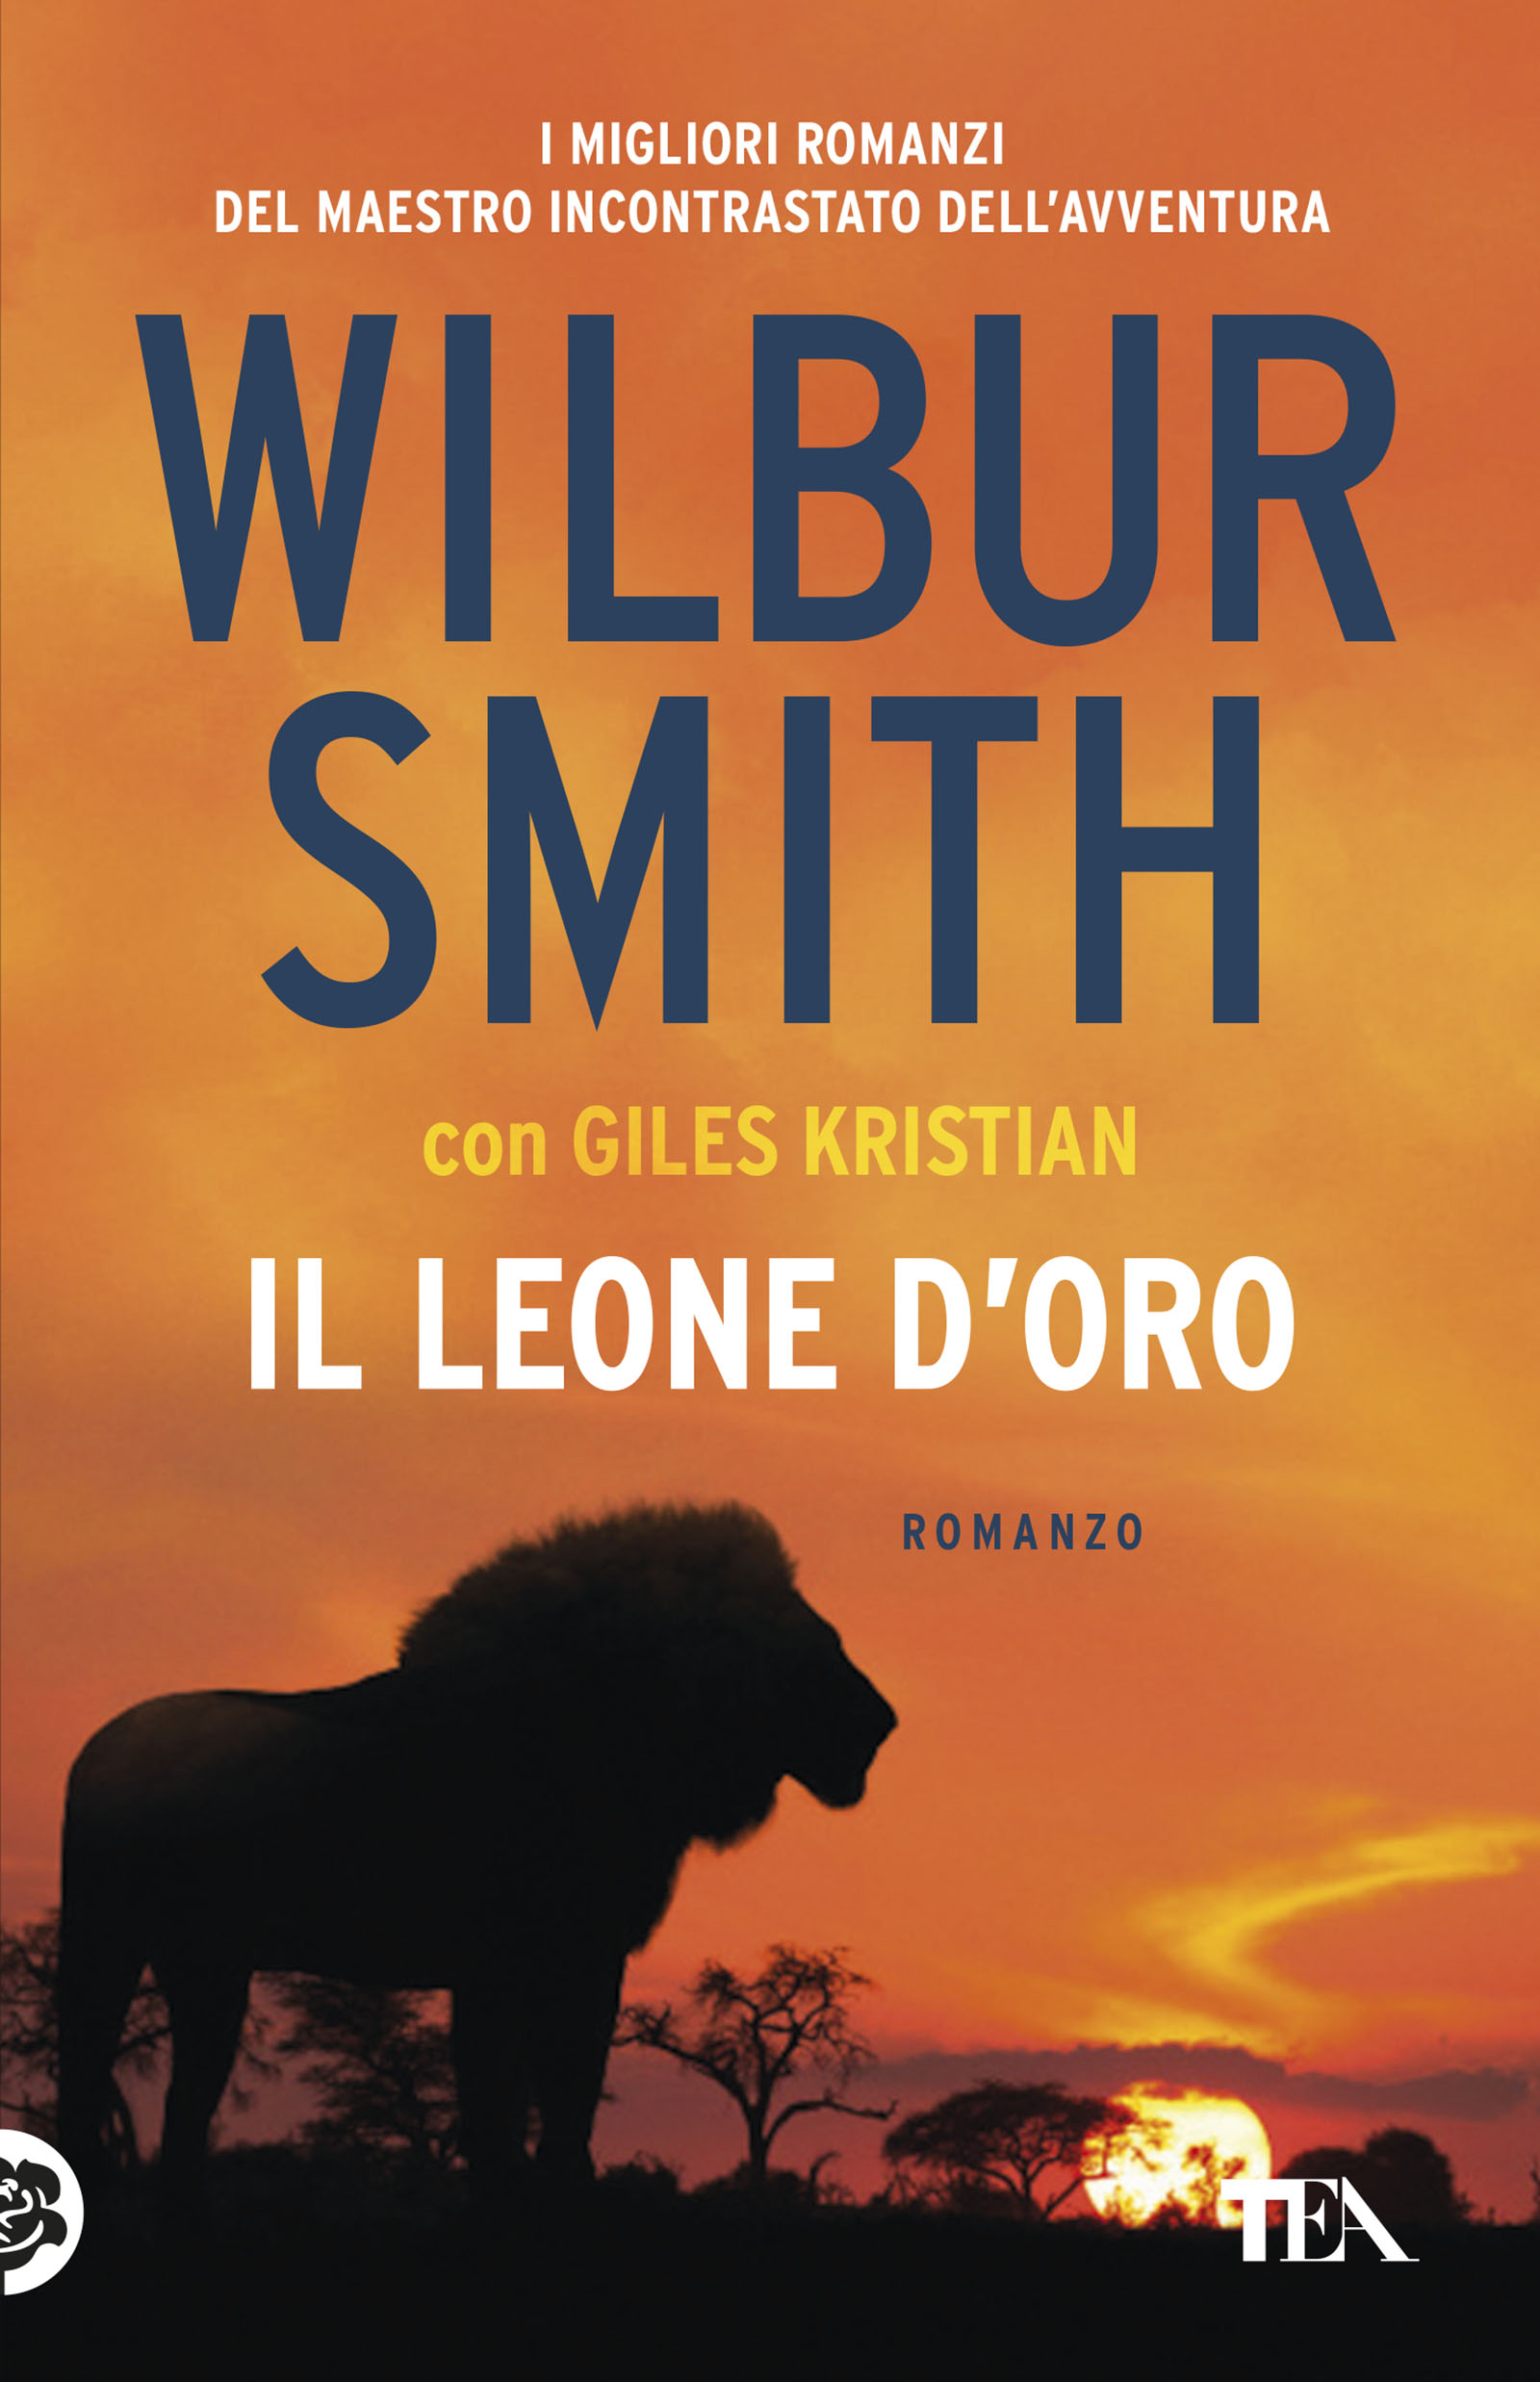 antique boss pinch Wilbur Smith, Giles Kristian - Il leone d'oro — TEA Libri